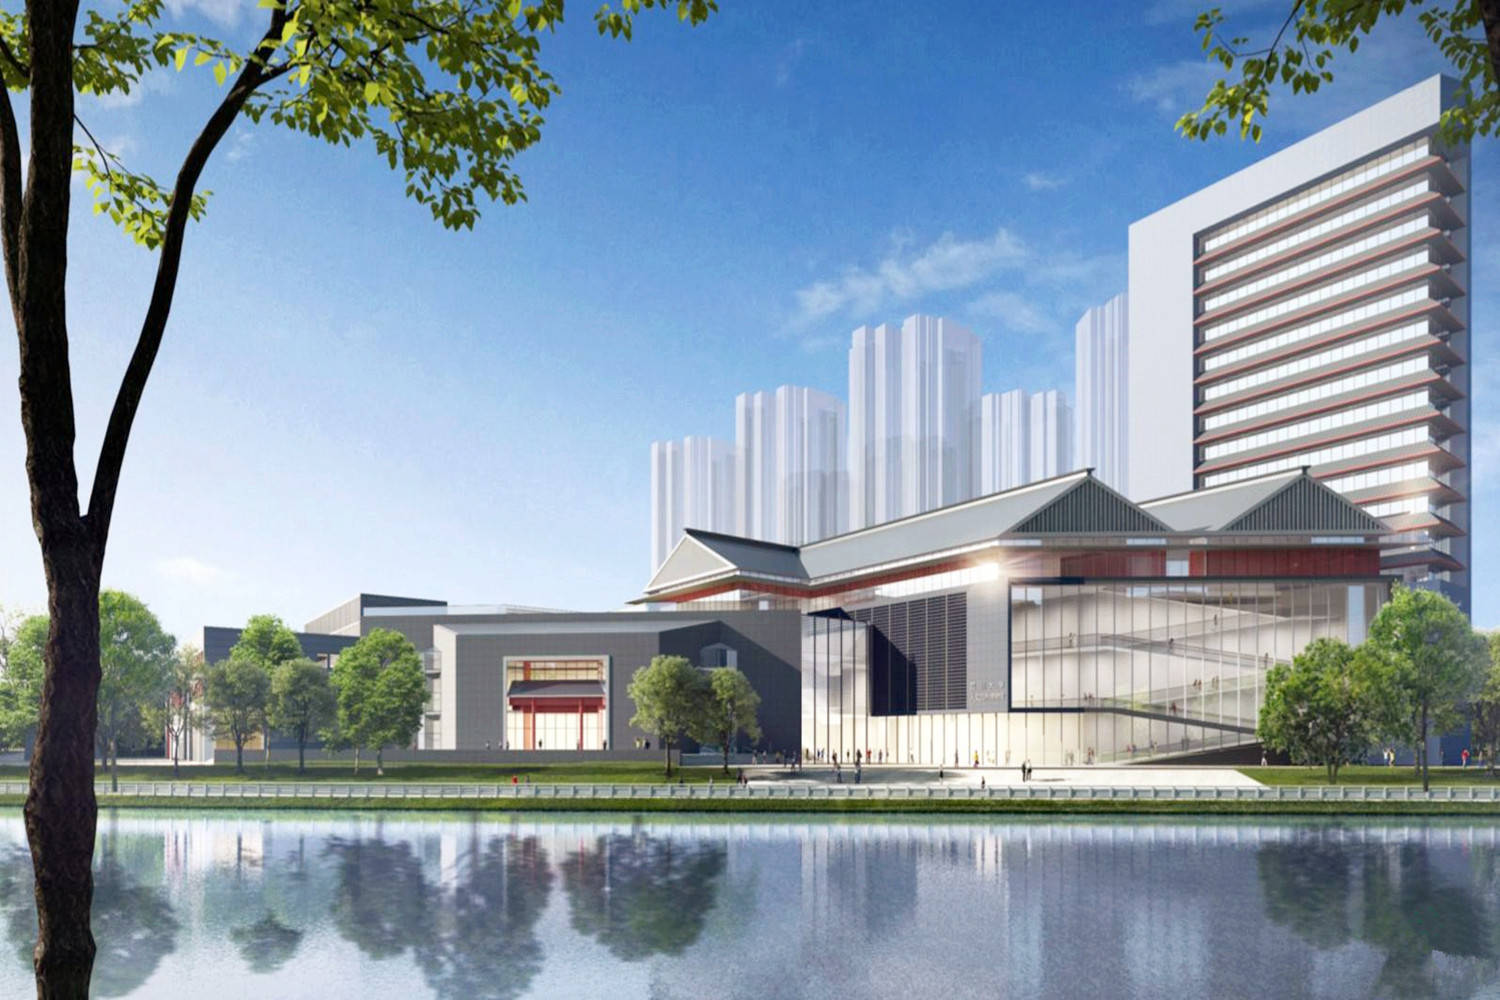 “云电竞官网”
四川这座刚更名的大学将建新校区 投资约14亿元 计划2021年开工(图1)